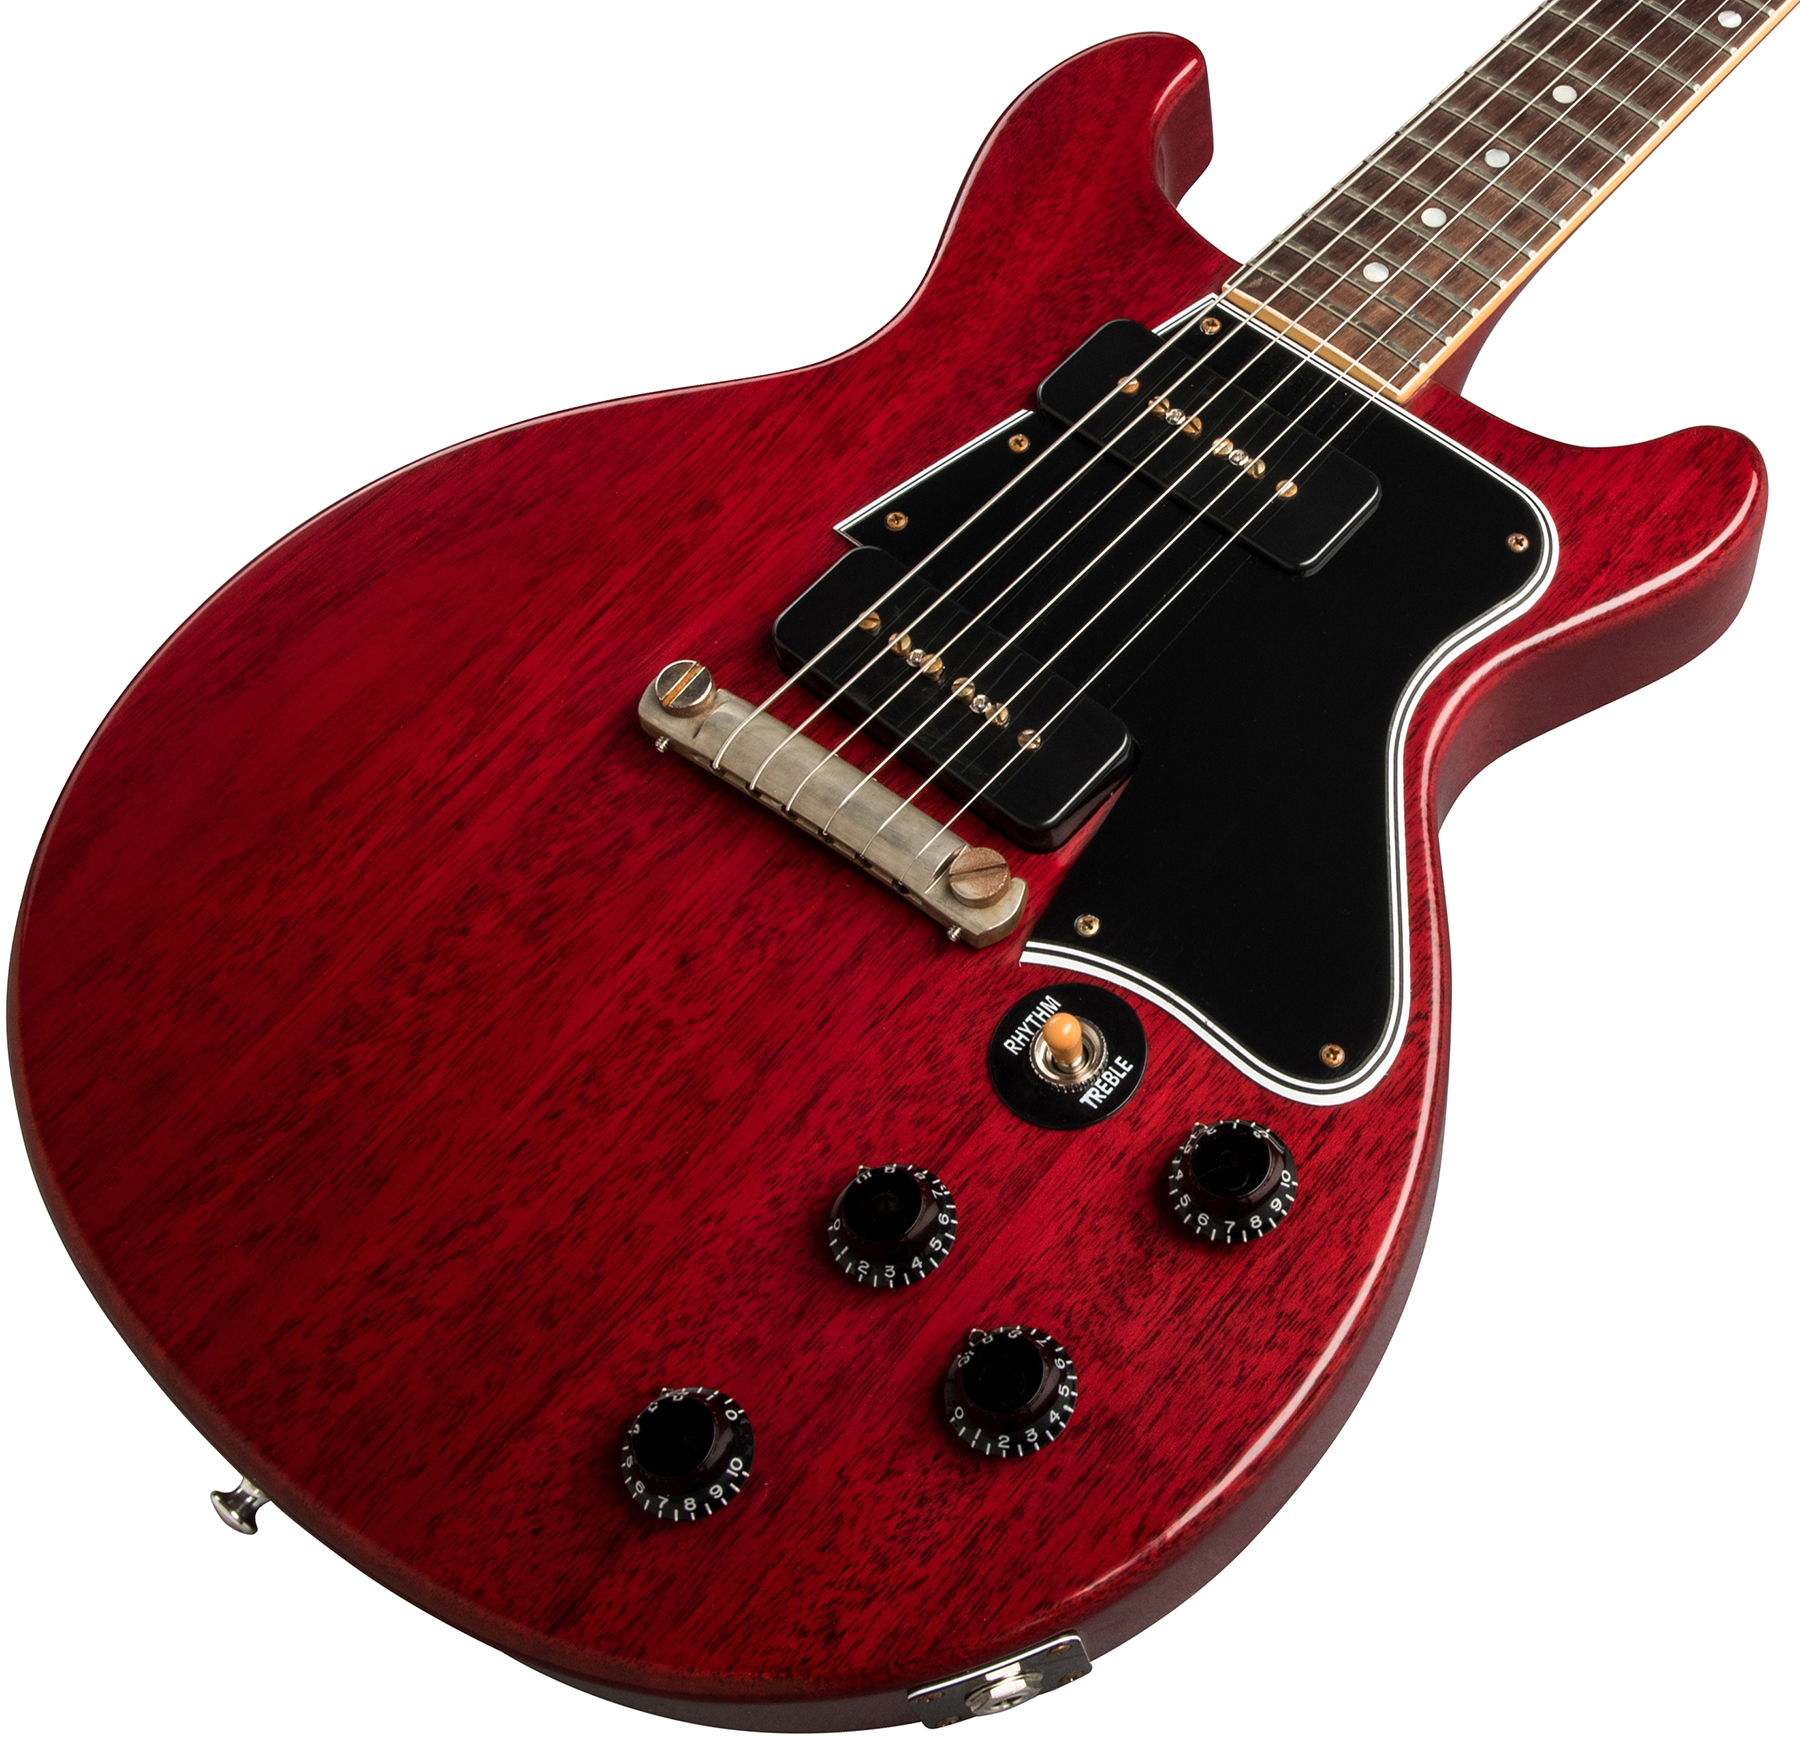 Gibson Custom Shop Les Paul Special 1960 Double Cut Reissue 2p90 Ht Rw - Vos Cherry Red - Guitarra eléctrica de corte único. - Variation 3